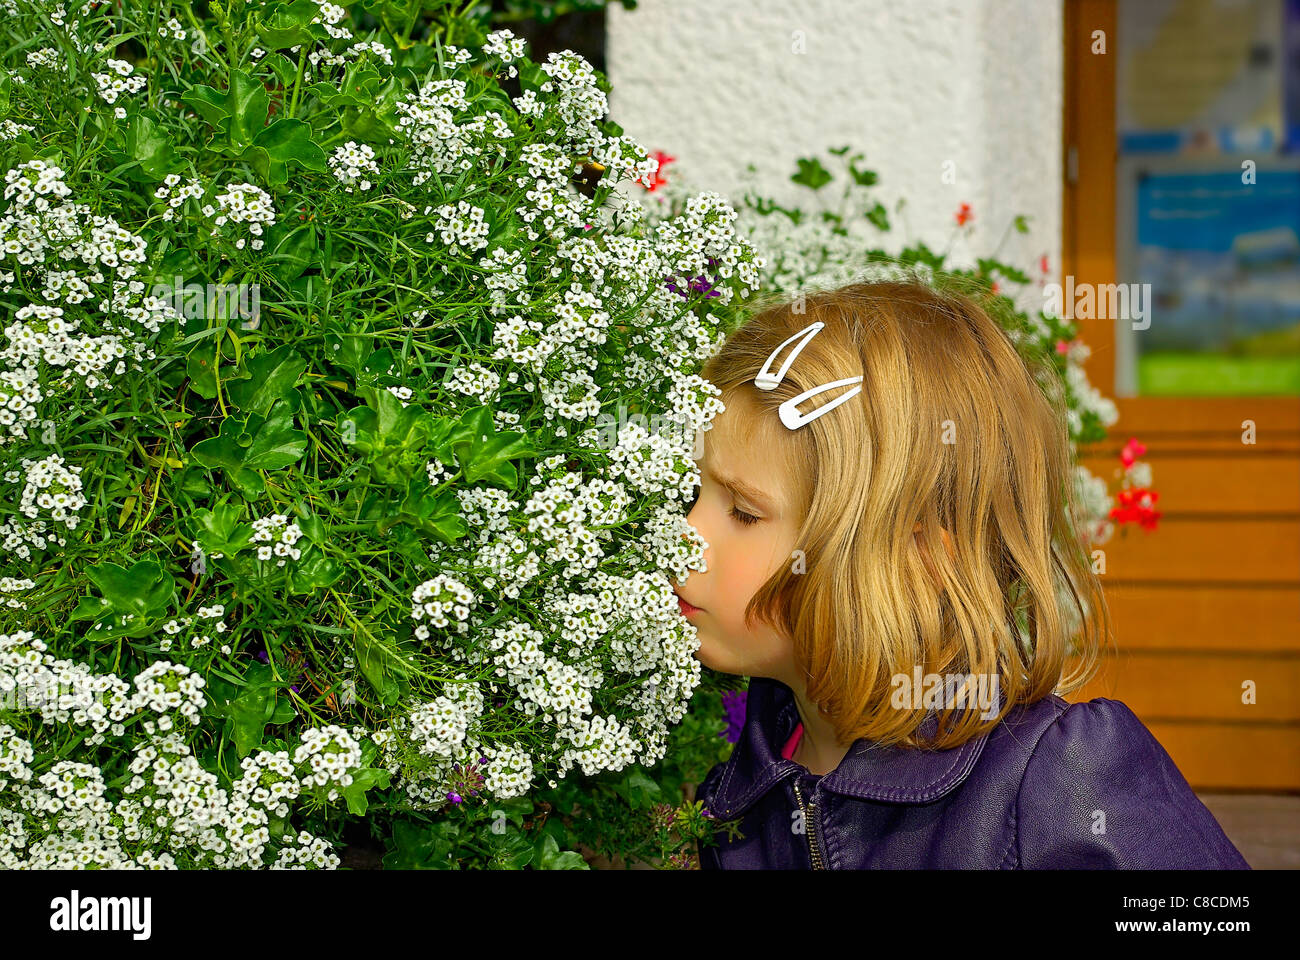 Ein kleines Mädchen nimmt einen Geruch an einen Blumenstrauß weiße Blüte. Stockfoto